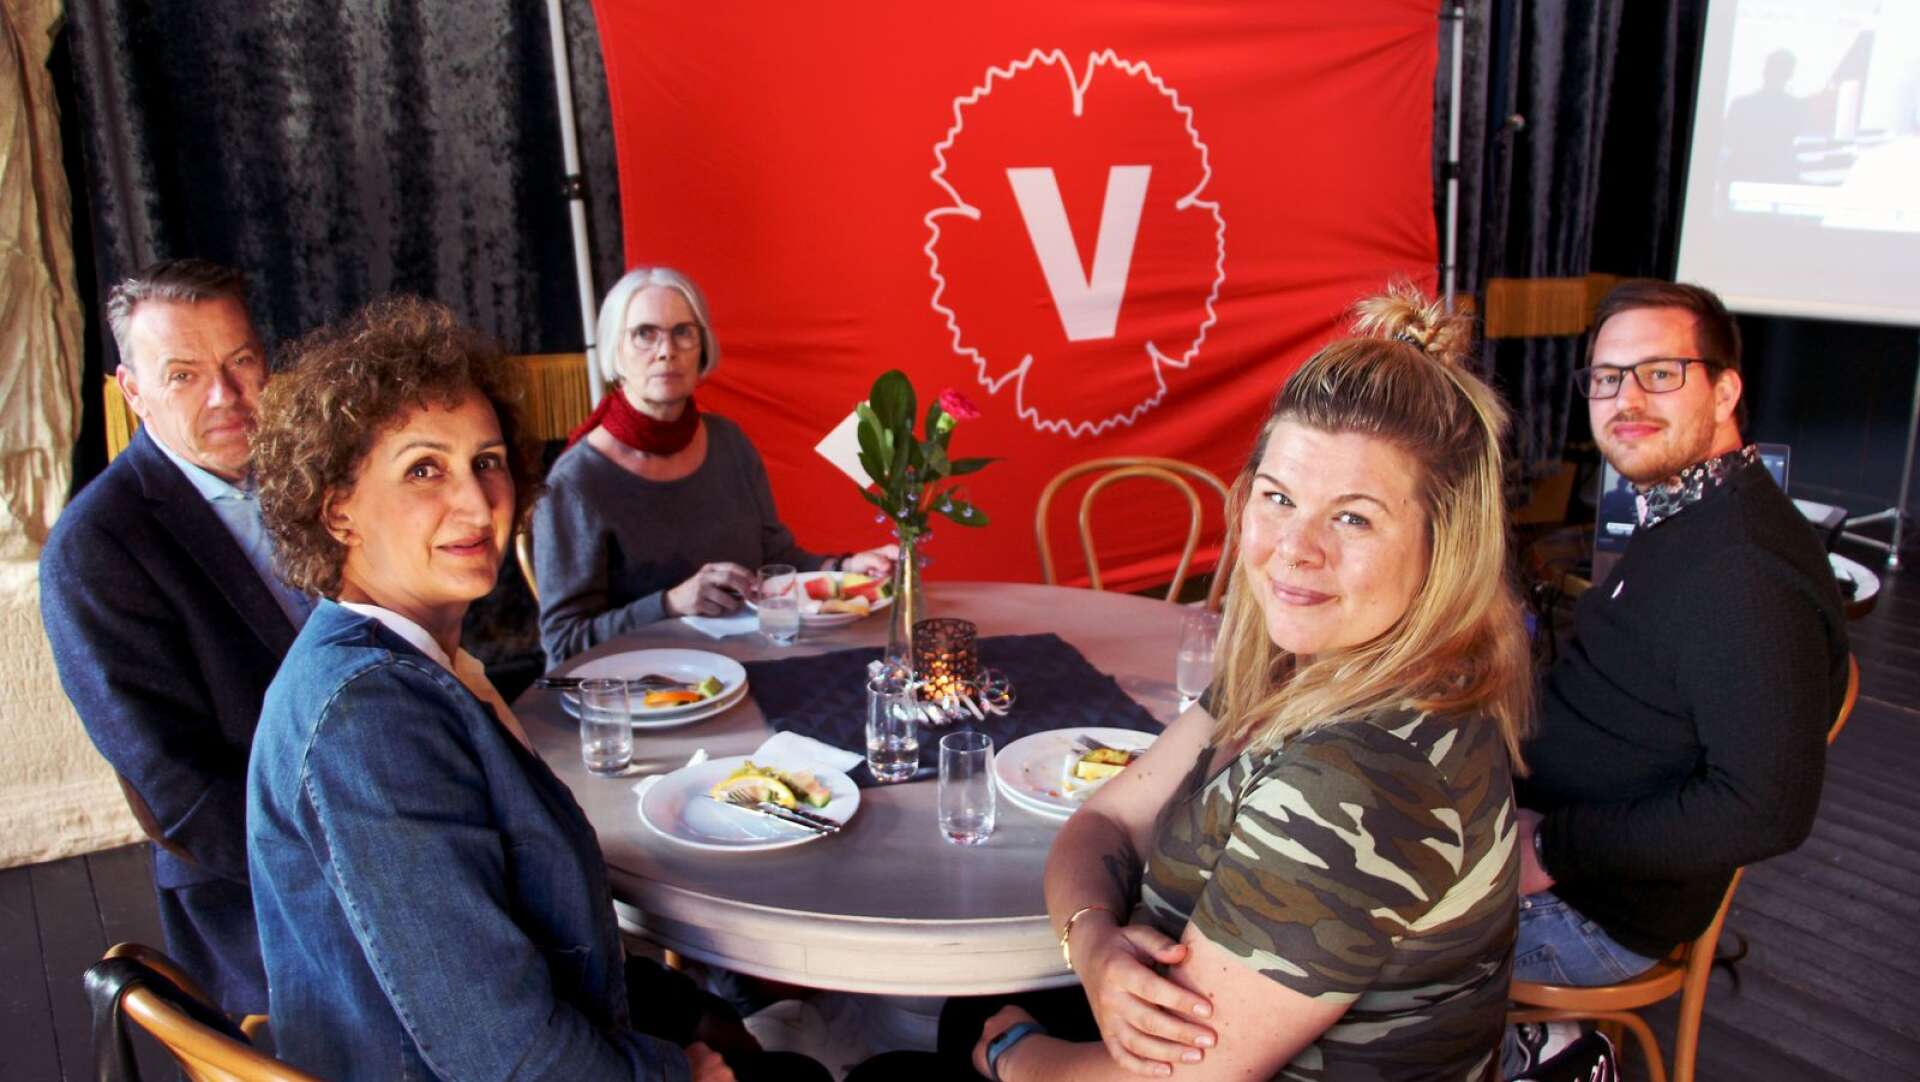 Håkan Svenneling, Susanna Göransdotter, Parvane Assadbegli, Per Strömgren och Susanna Hobbins var förväntansfulla under Vänsterpartiets valvaka i Karlstad på söndagen.